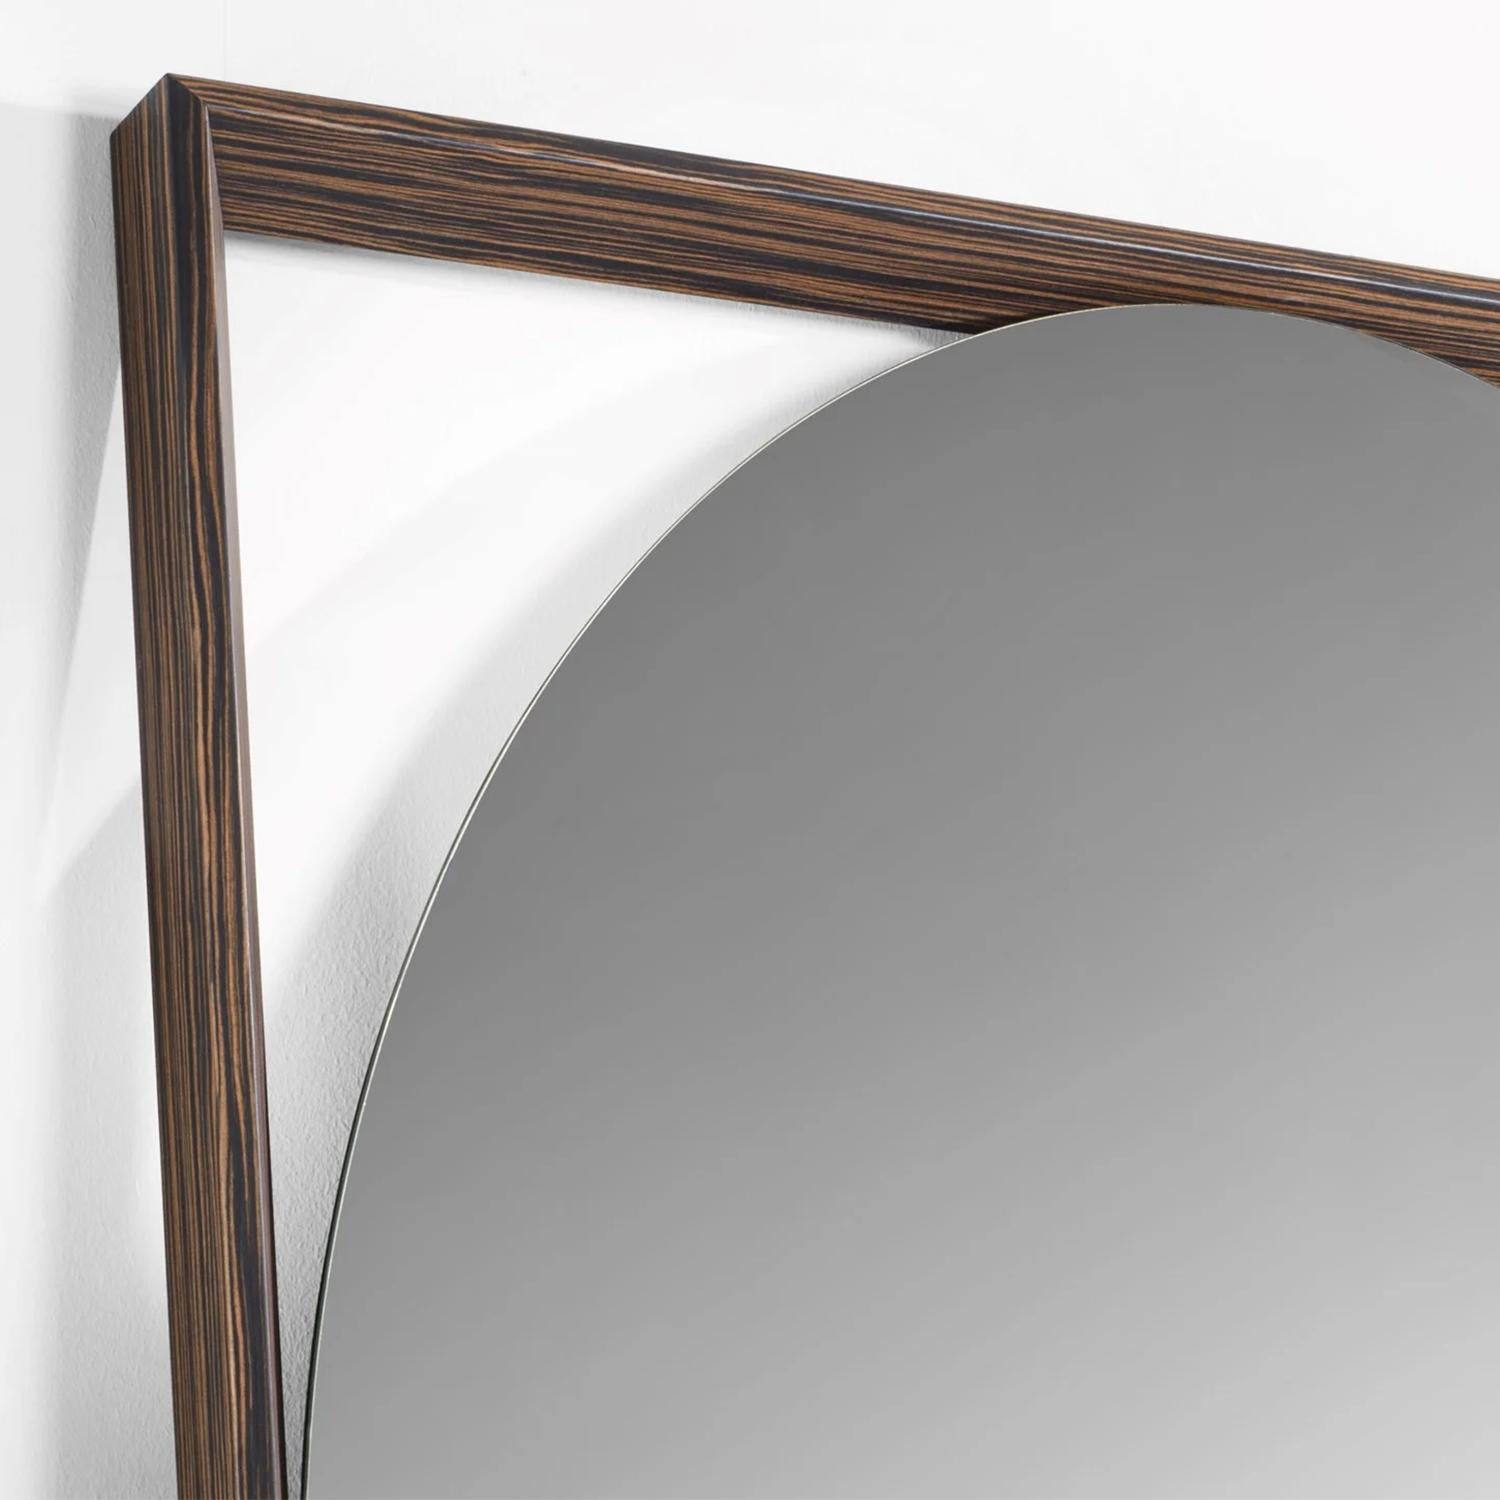 Spiegel Loma Gate Gebeizt mit Rahmen aus massiver Esche in Nussbaum
gebeizte Oberfläche. Mit rundem Spiegelglas. Loma-Tor-Spiegel
ein Bodenspiegel oder ein Wandspiegel ist. Auch mit Rahmen erhältlich
in geschwärzter Ausführung, auf Anfrage.